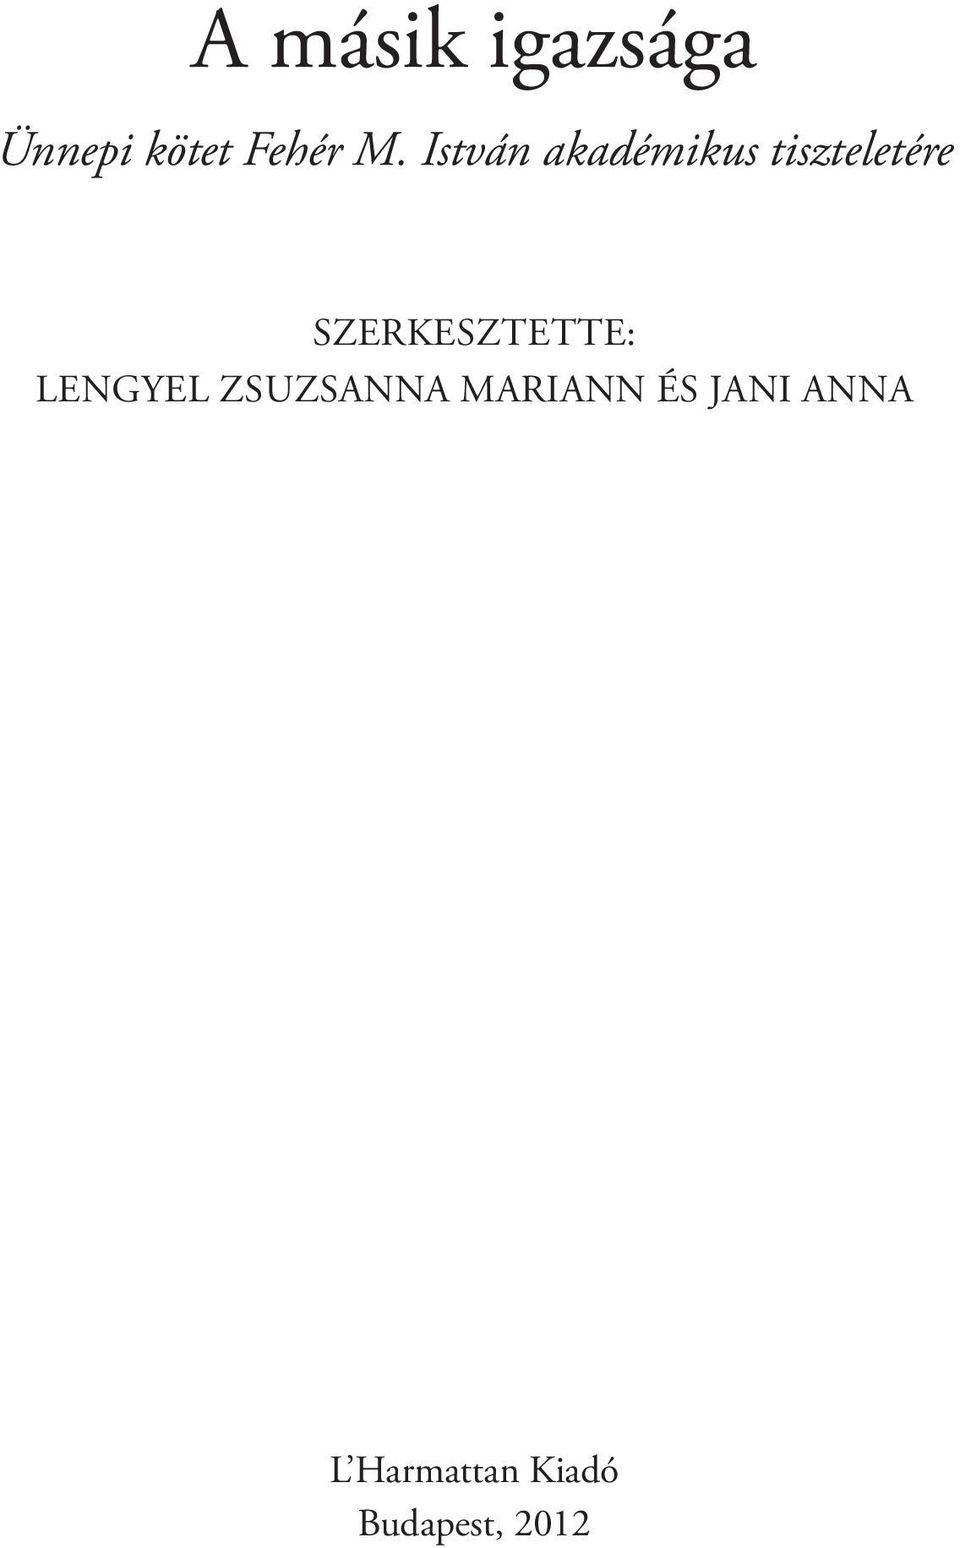 Szerkesztette: Lengyel zsuzsanna